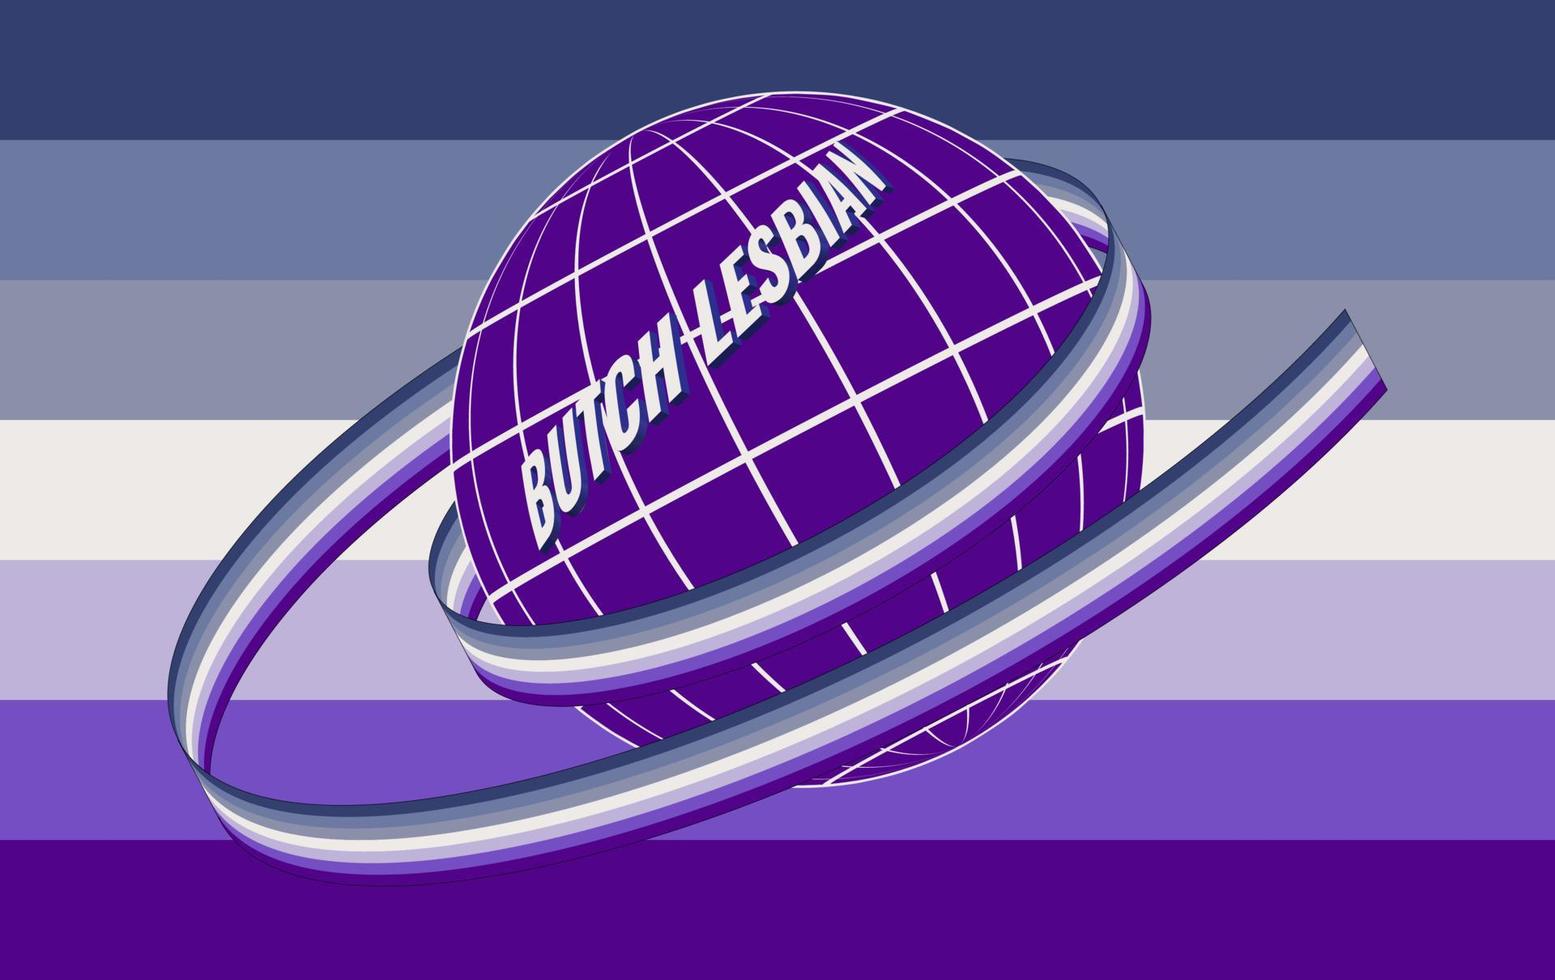 Butch-lesbisches Subkultursymbol. Vektor-Illustration. der boden, bemalt in den farben der flagge, ist in ein band mit der offiziellen flagge der lgbt-gemeinschaft gewickelt. vektor